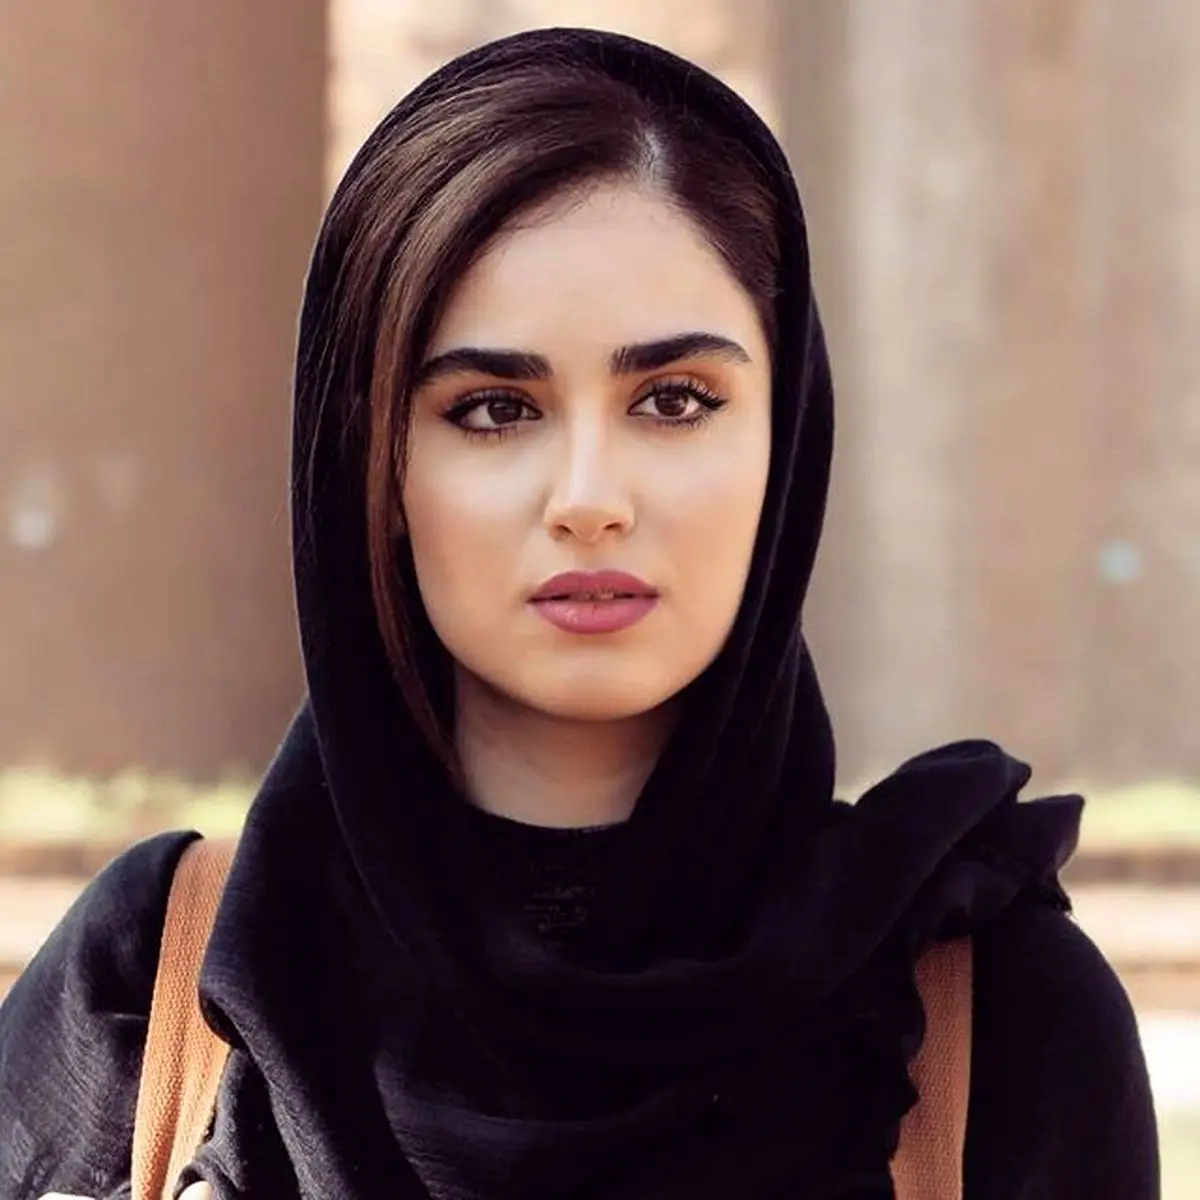 سکس خواهر وبرادر ایرانی